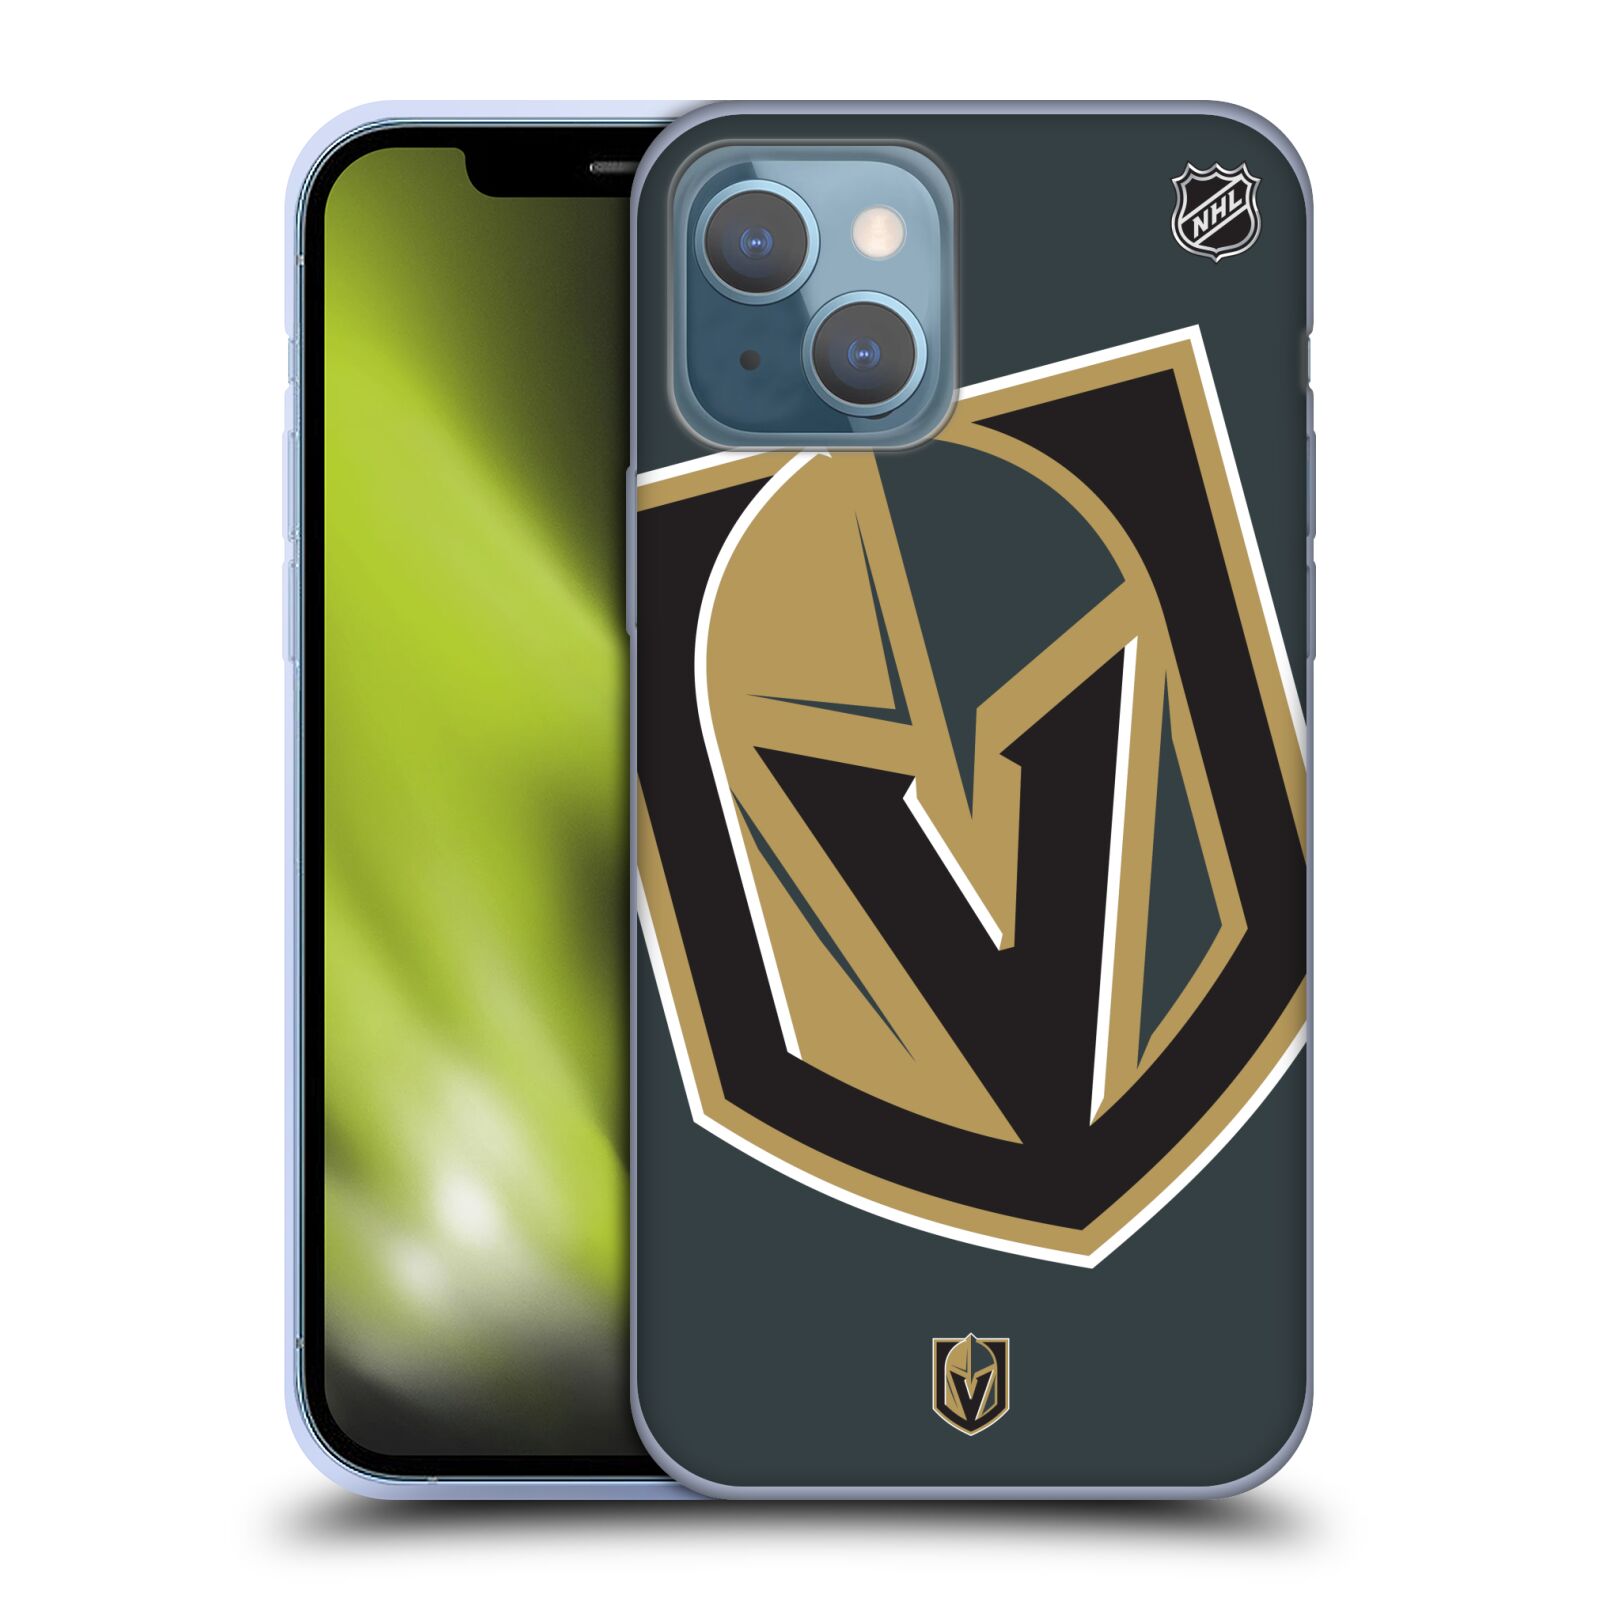 Silikonové pouzdro na mobil Apple iPhone 13 - NHL - Velké logo Vegas Golden Knights (Silikonový kryt, obal, pouzdro na mobilní telefon Apple iPhone 13 s licencovaným motivem NHL - Velké logo Vegas Golden Knights)